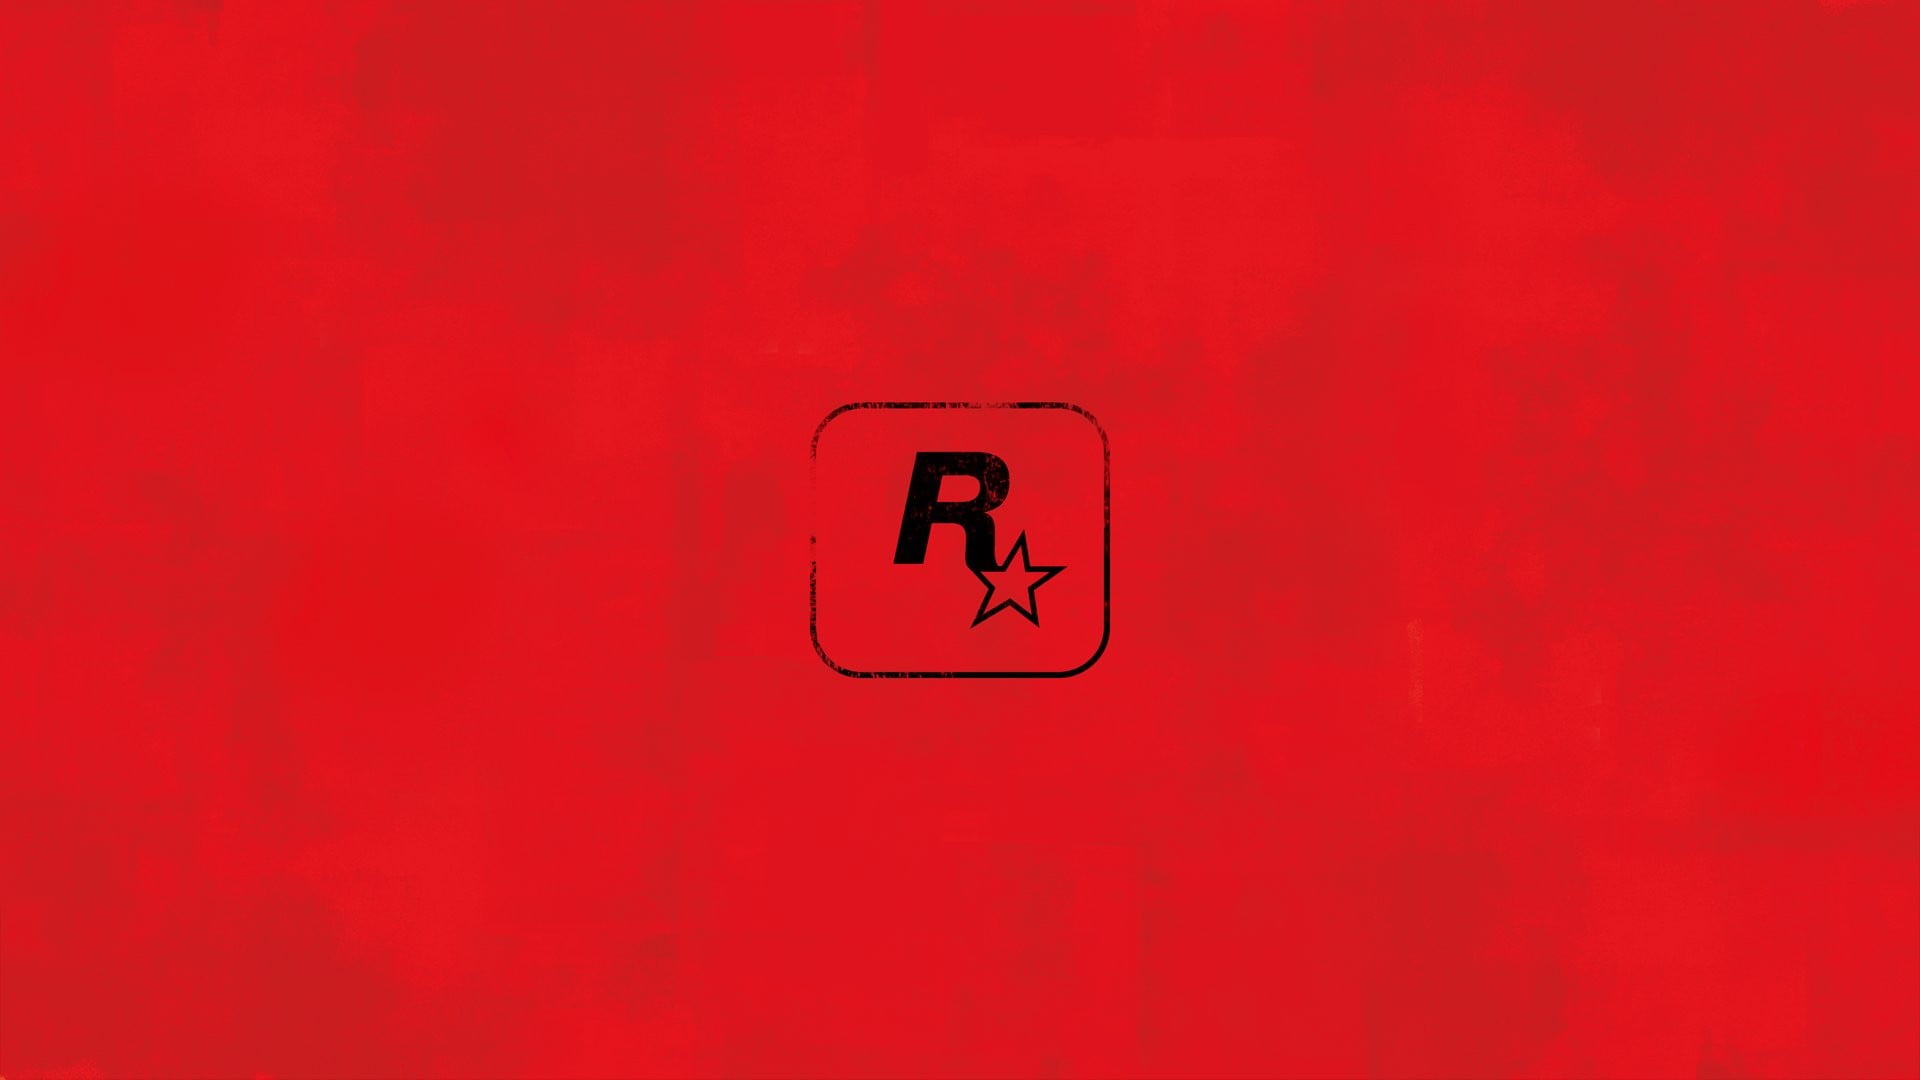 red and black R logo illustration, Rockstar Games, logo, red, Red Dead Redemption